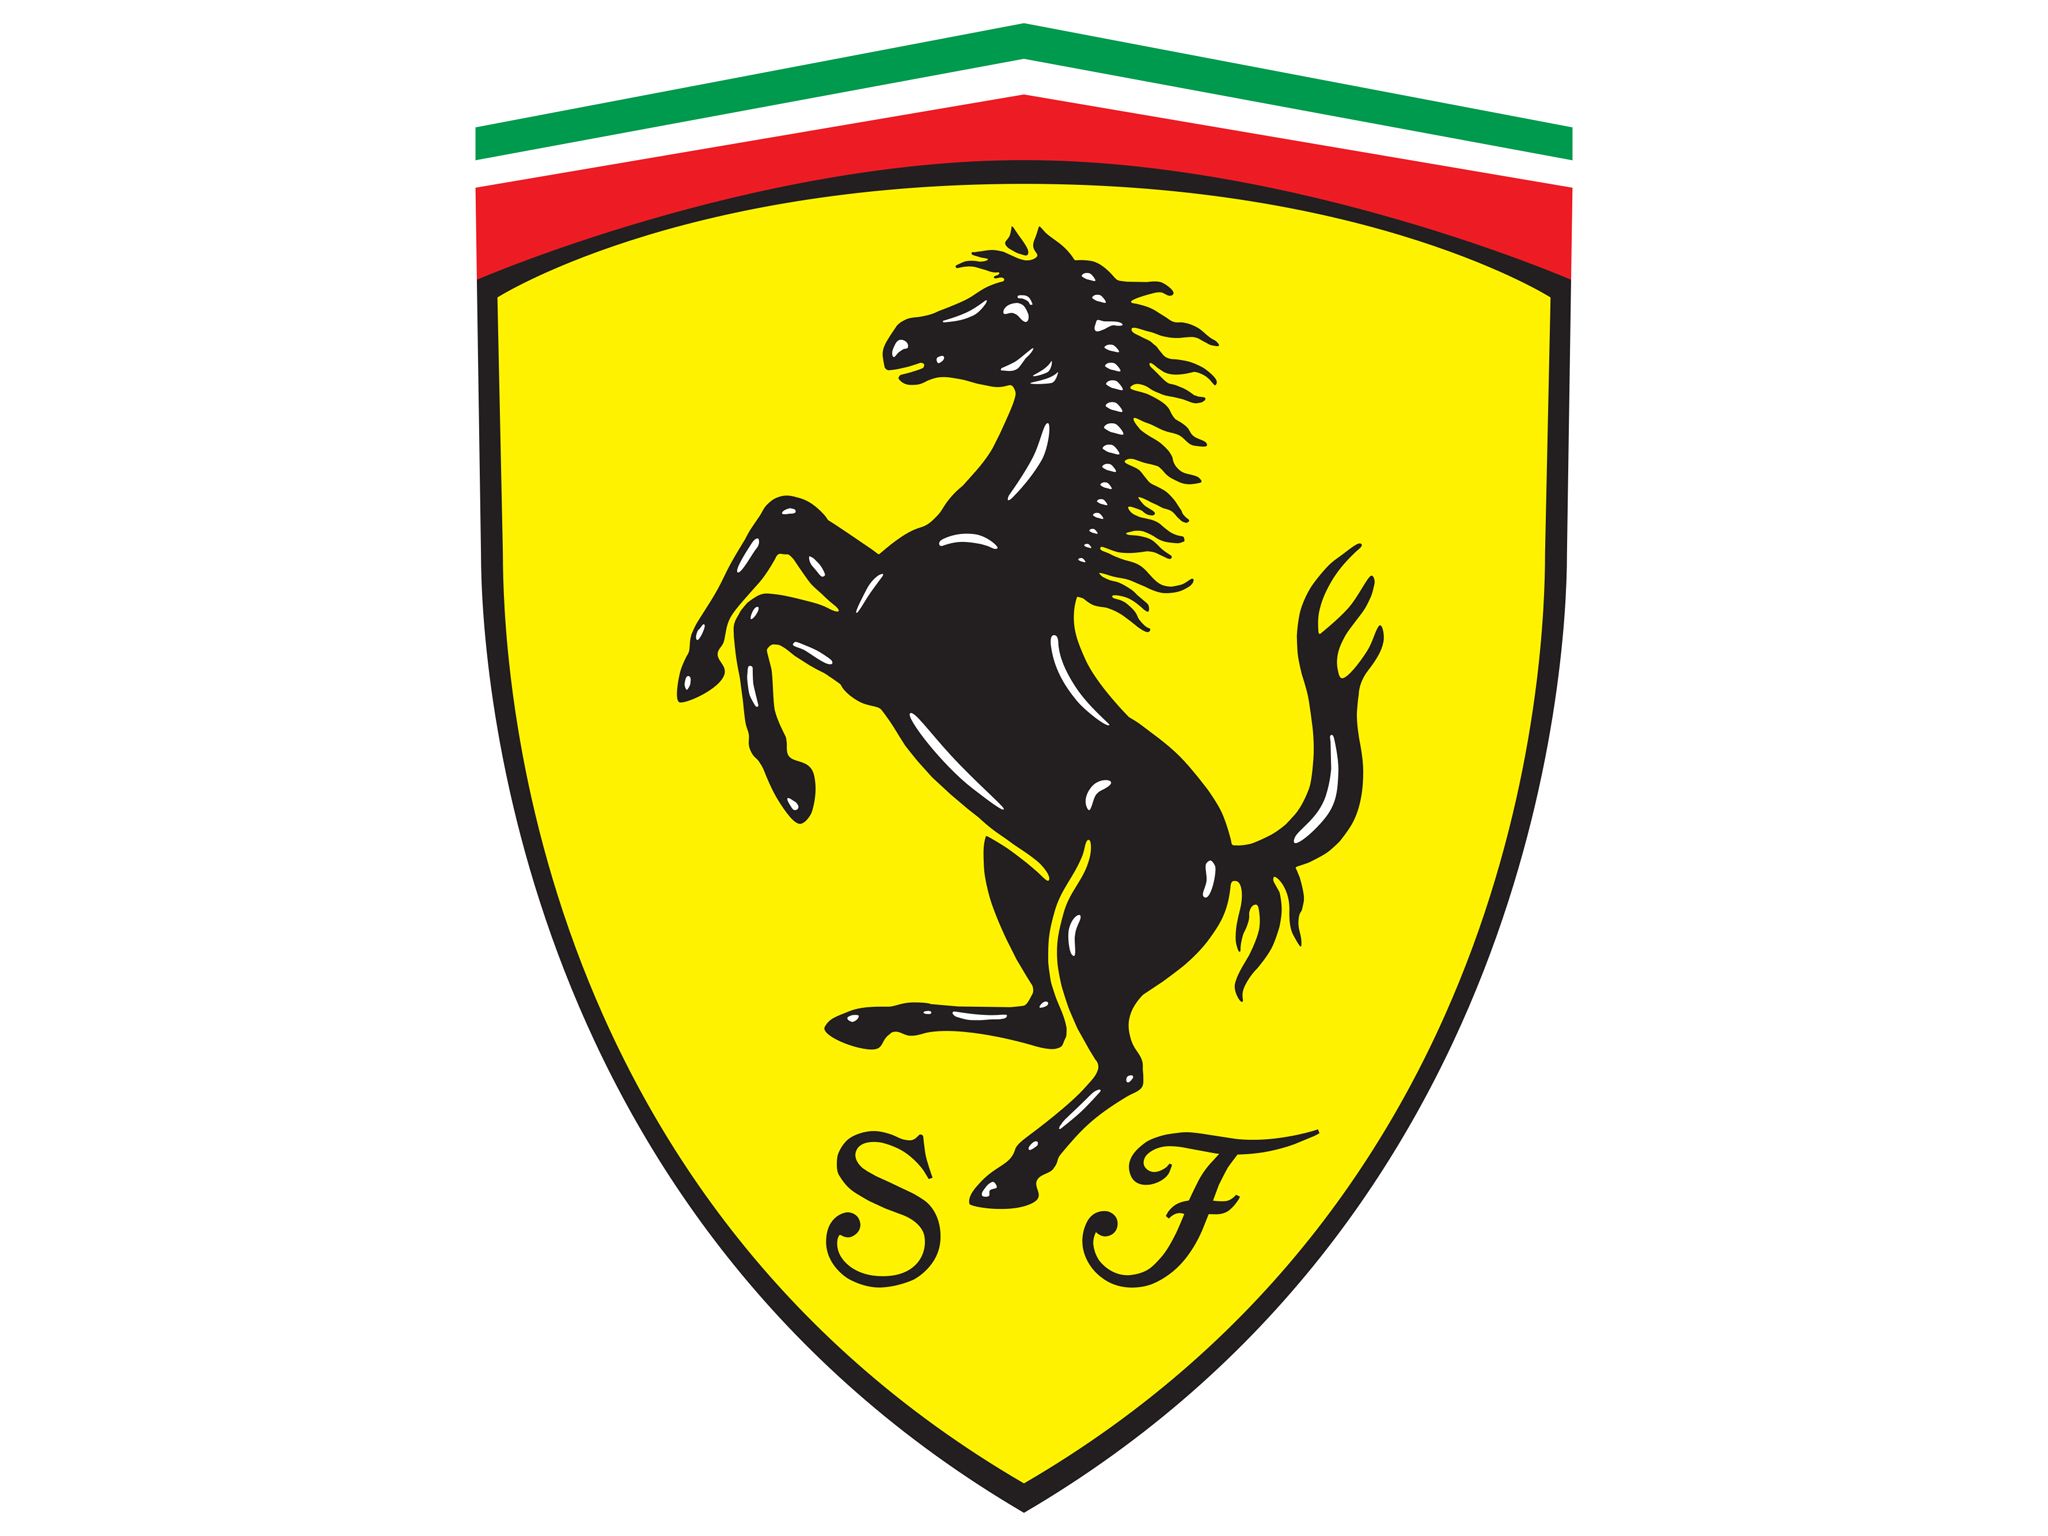 75+] Ferrari Logo Wallpapers - WallpaperSafari